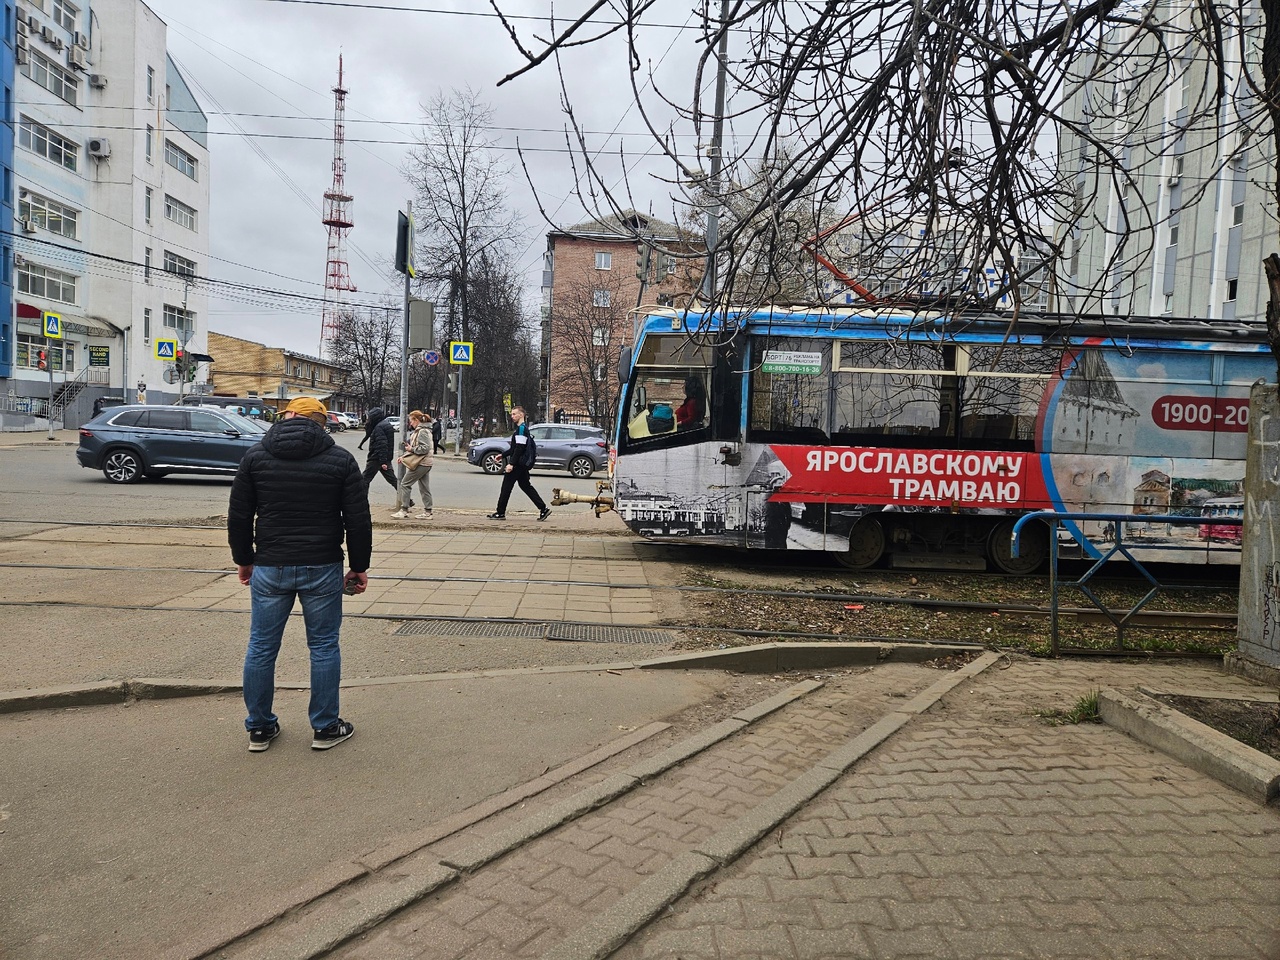 Ярославский депутат недоволен сроками поставки новых трамваев